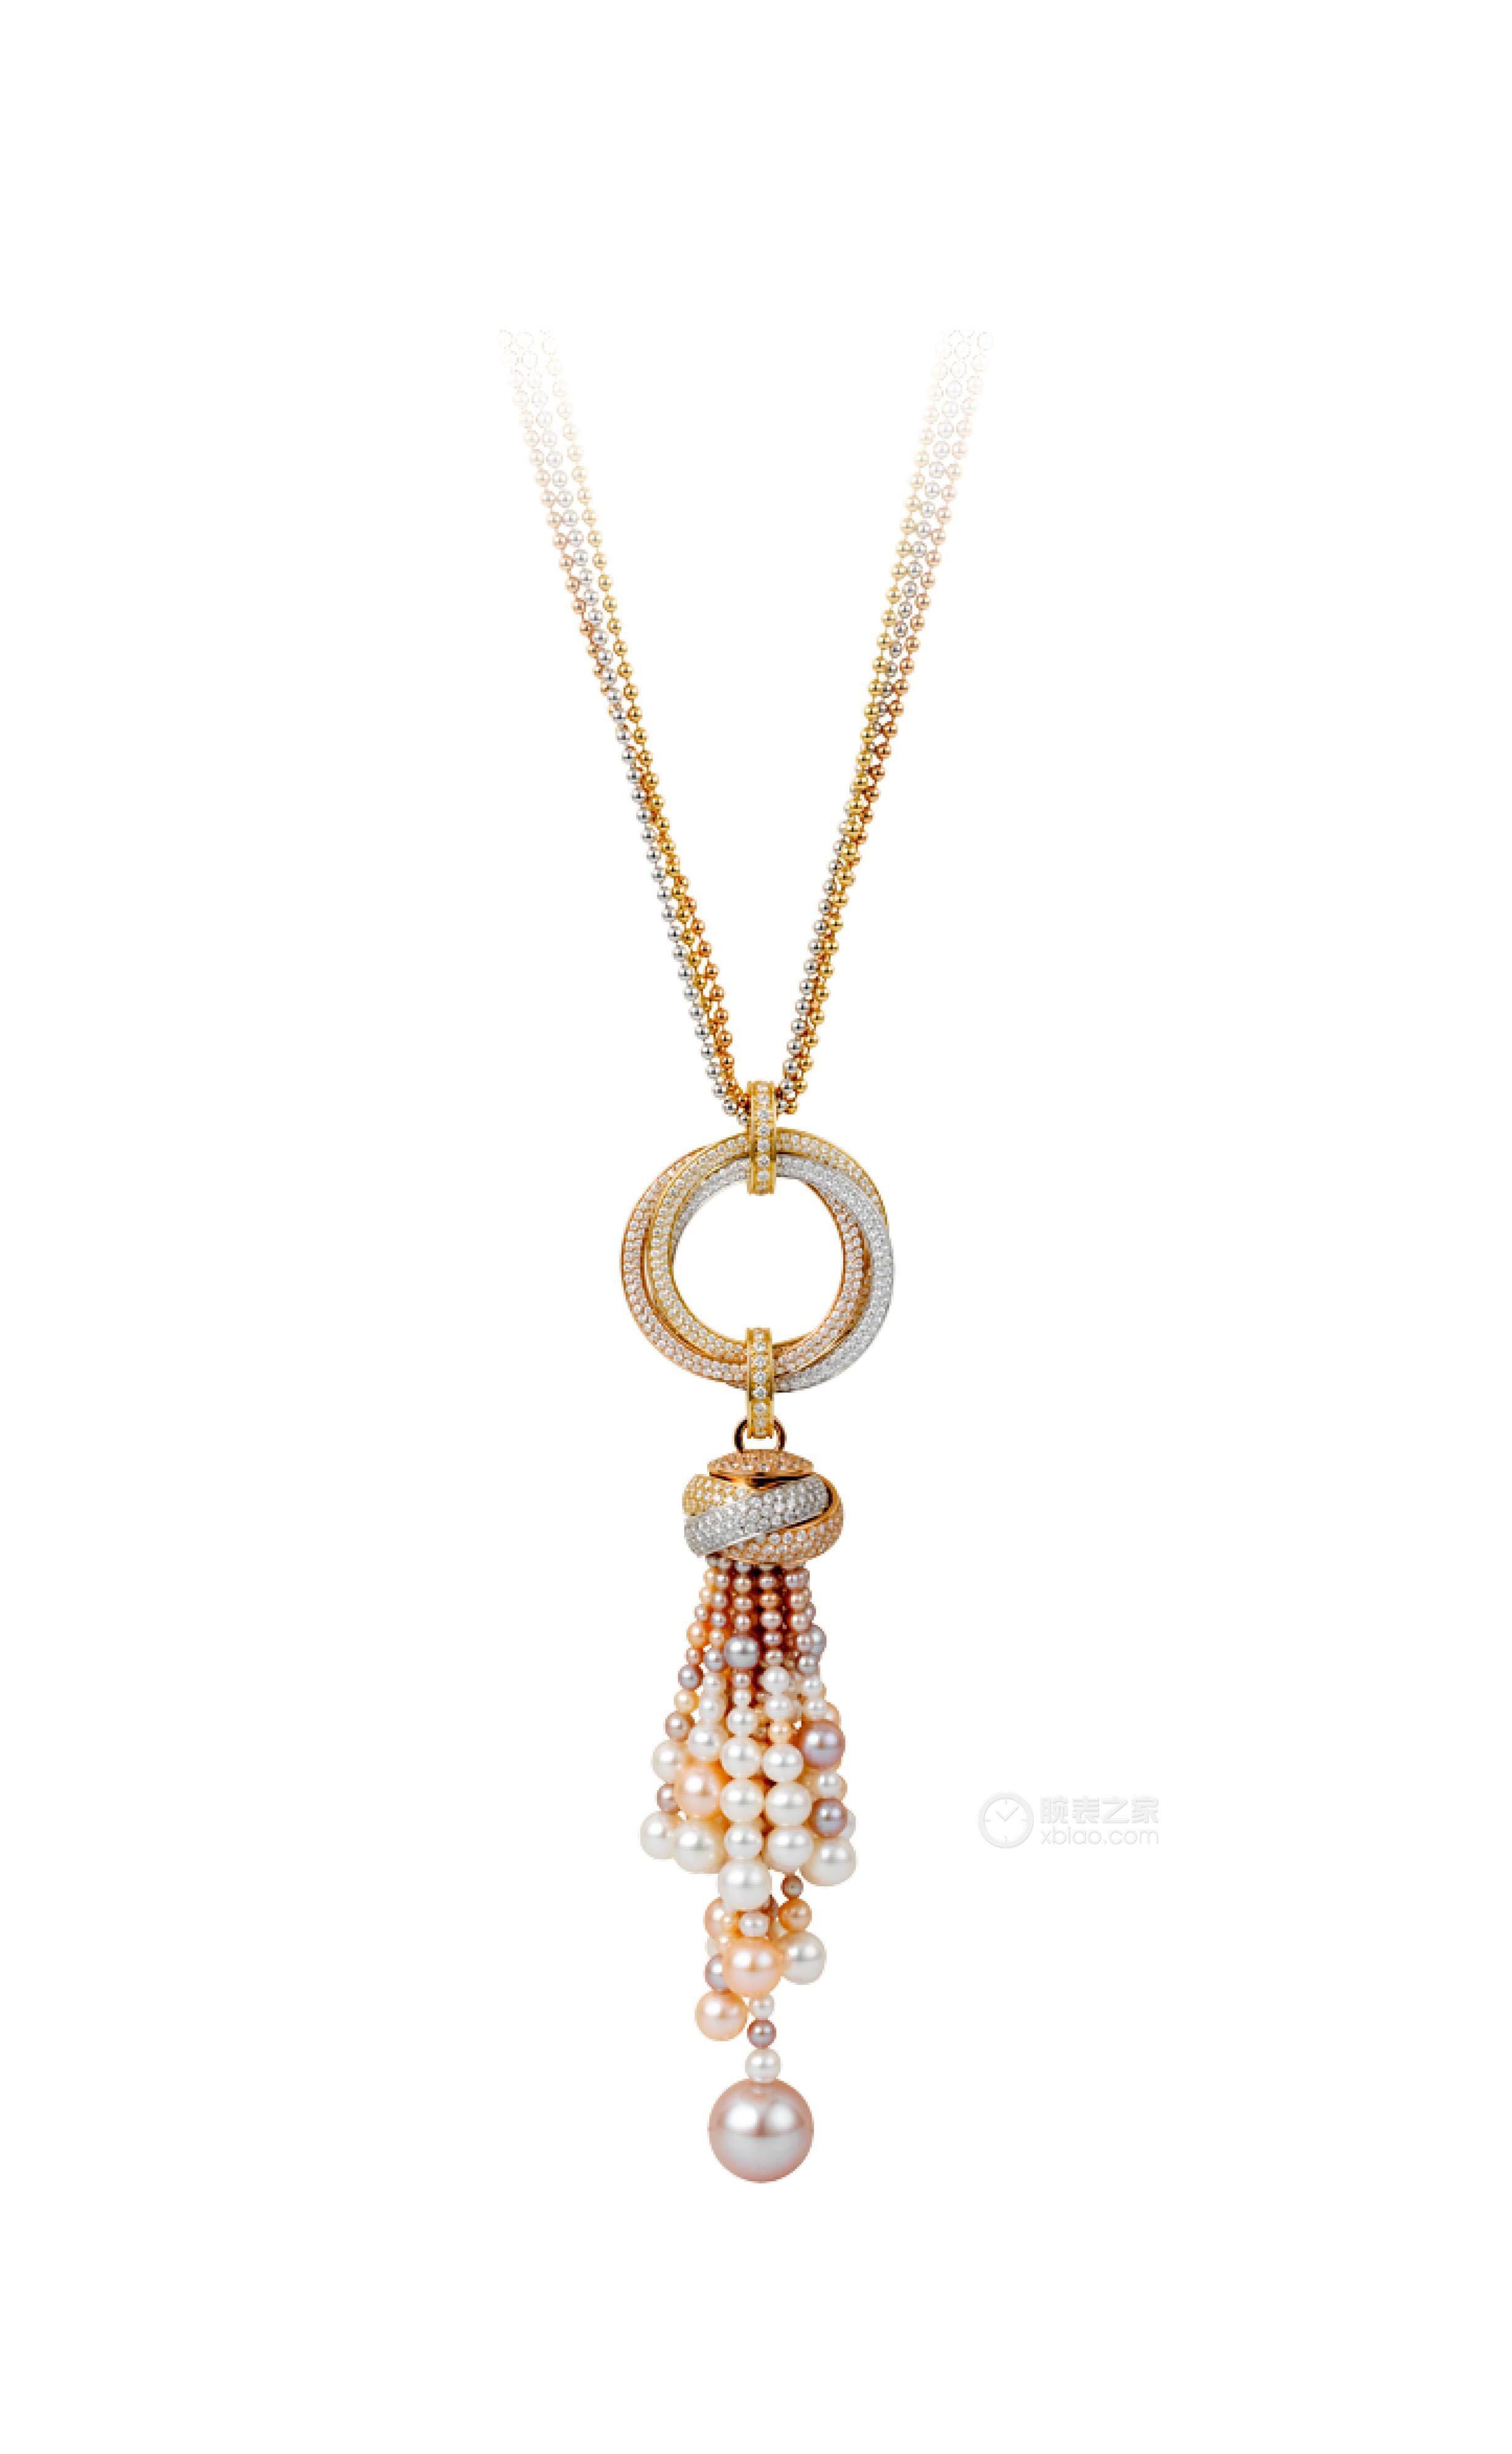 高清图|卡地亚PARIS NOUVELLE VAGUE系列玫瑰金钻石项链项链/吊坠图片1|腕表之家-珠宝